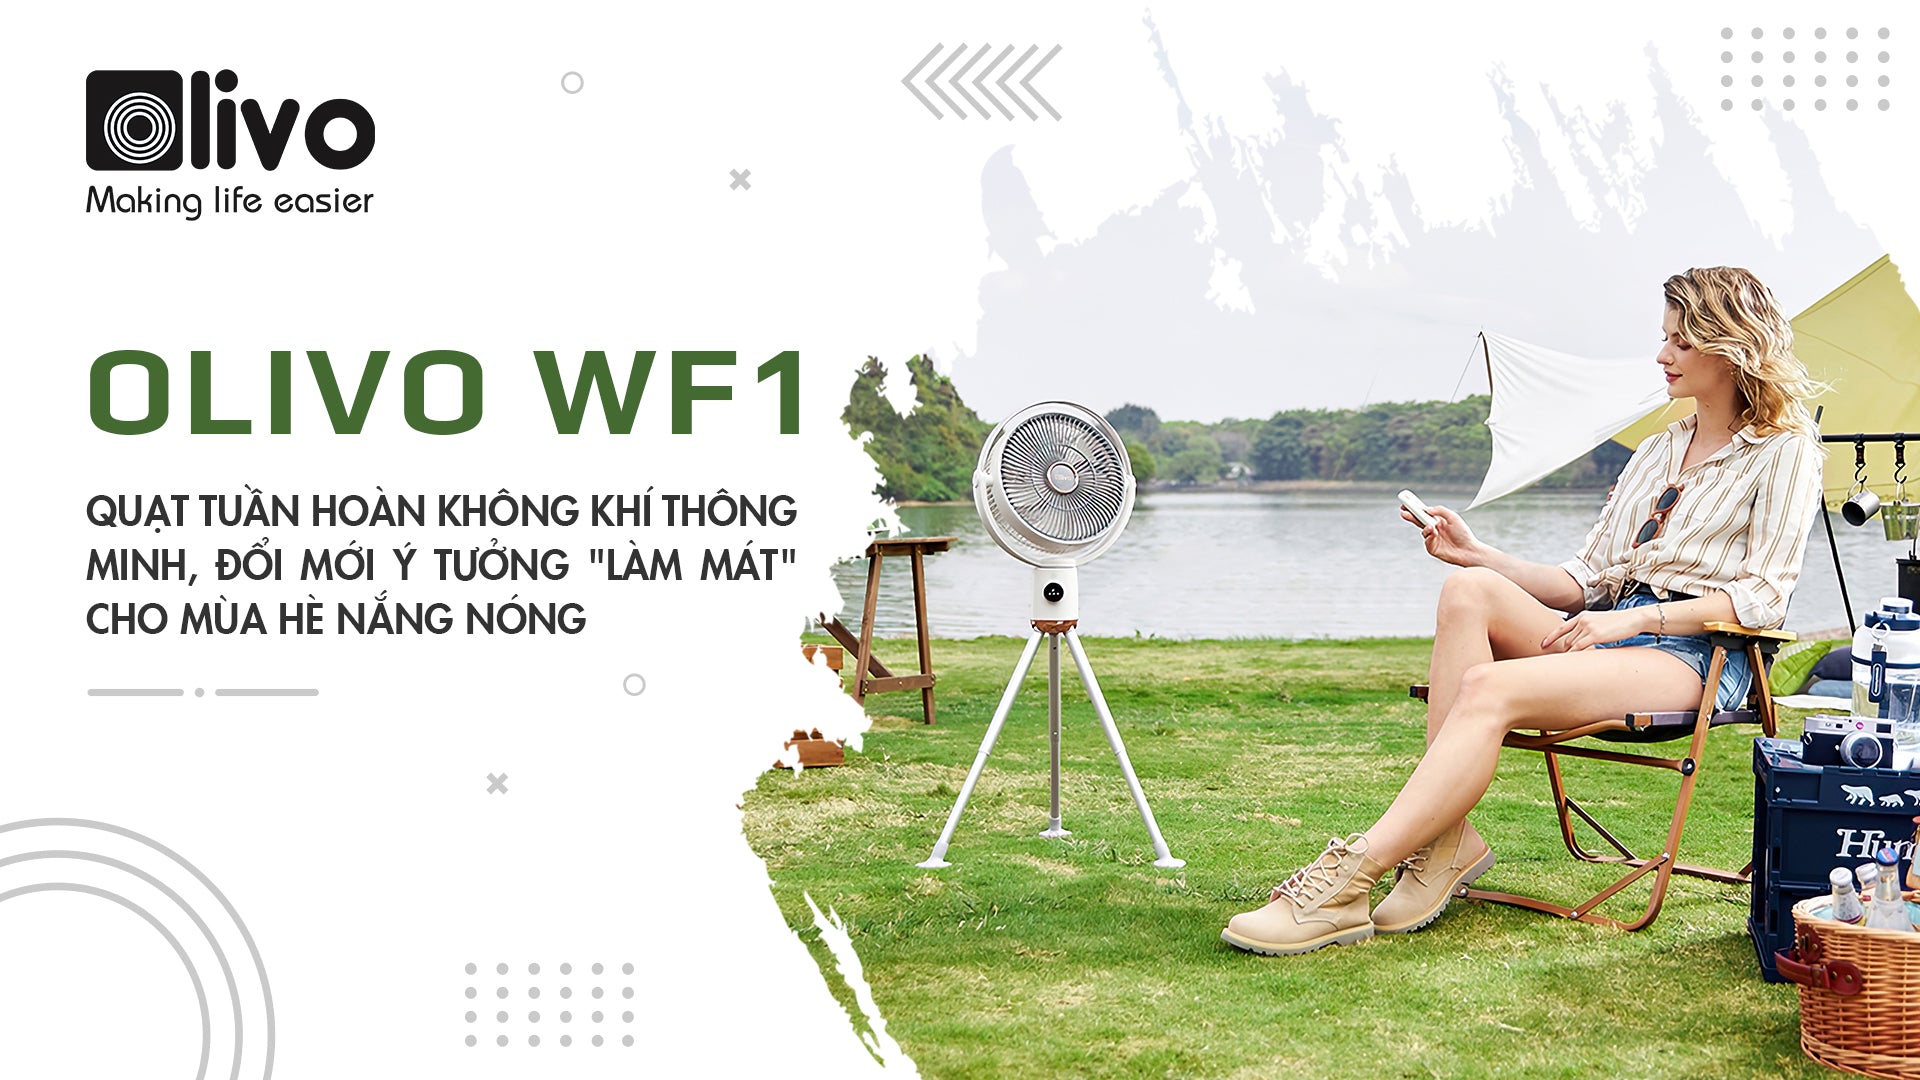 Quạt tuần hoàn không khí OLIVO WF1, đổi mới ý tưởng “làm mát” cho mùa hè nắng nóng